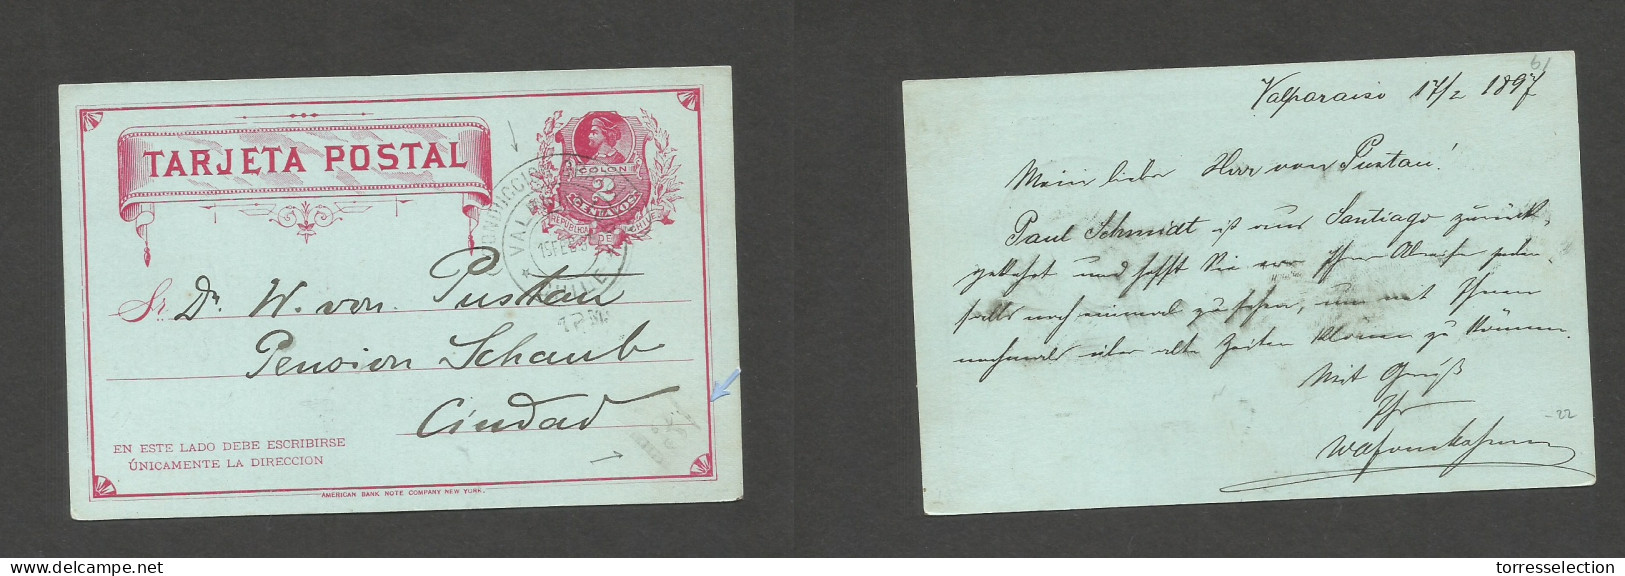 CHILE - Stationery. 1897 (17 Feb) Valp Local 2c Red Stat Card Usage. Conduccion Gratuita Cachet + "3" Box District Valp. - Chile